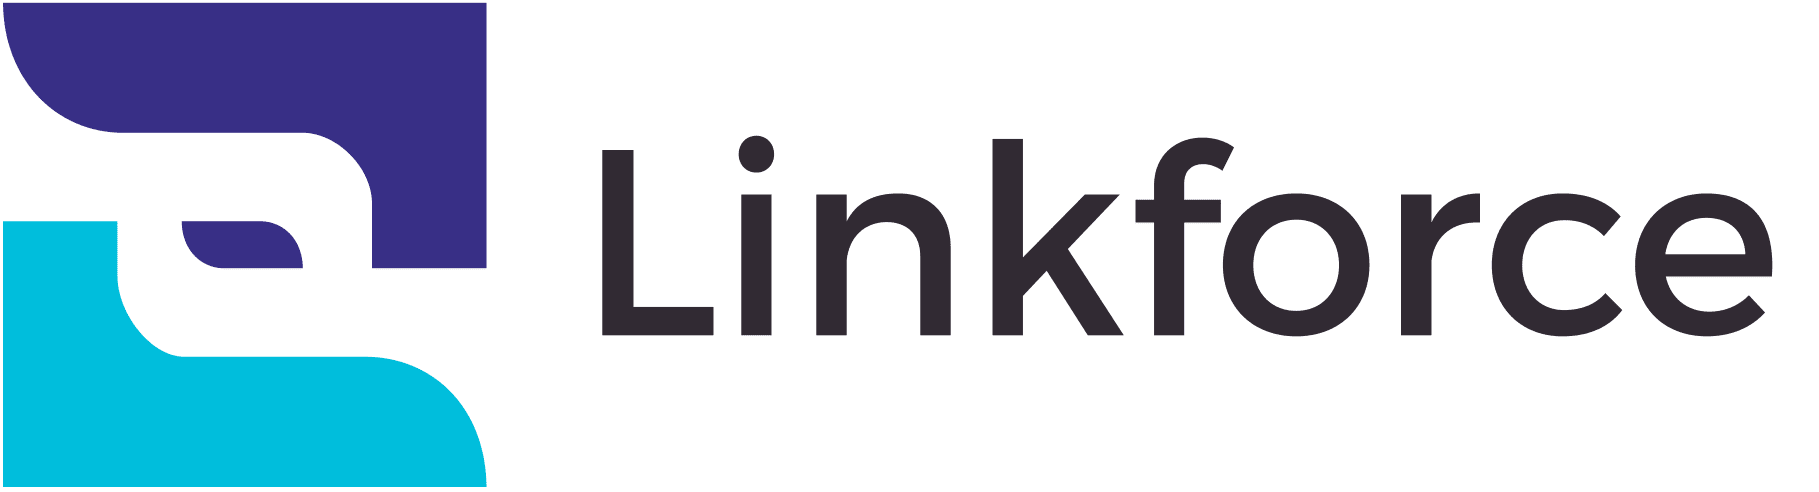 Linkforce: Descripción breve de la marca Escriba aquí.